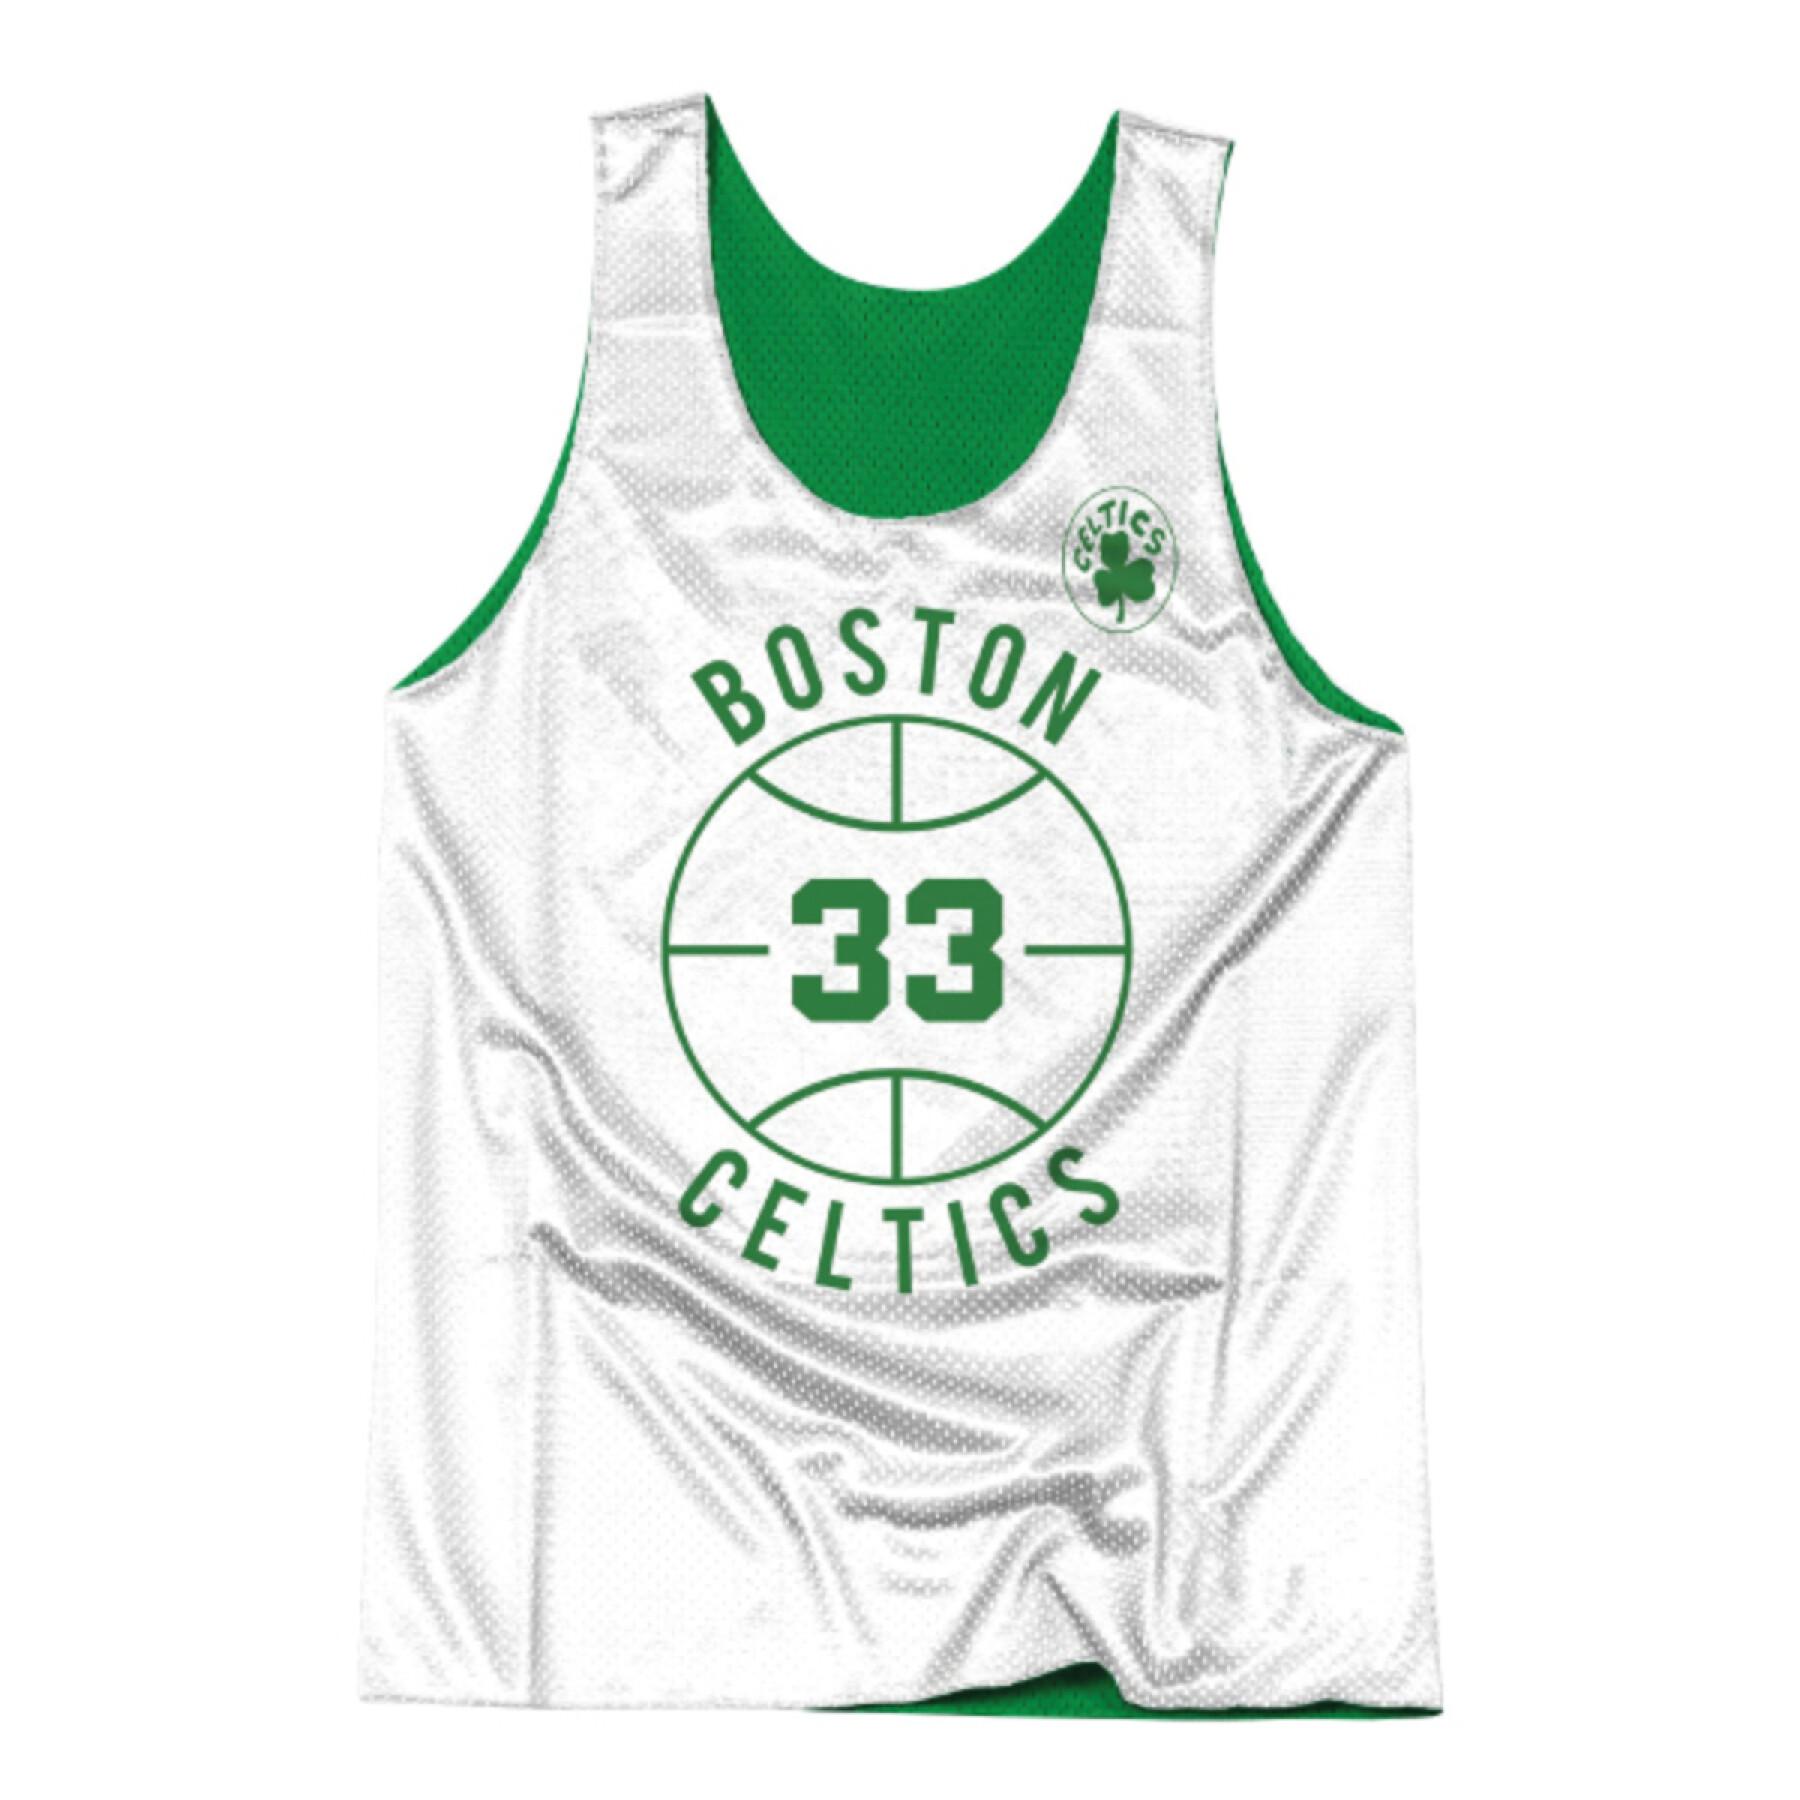 Omkeerbare jersey Boston Celtics Larry Bird 